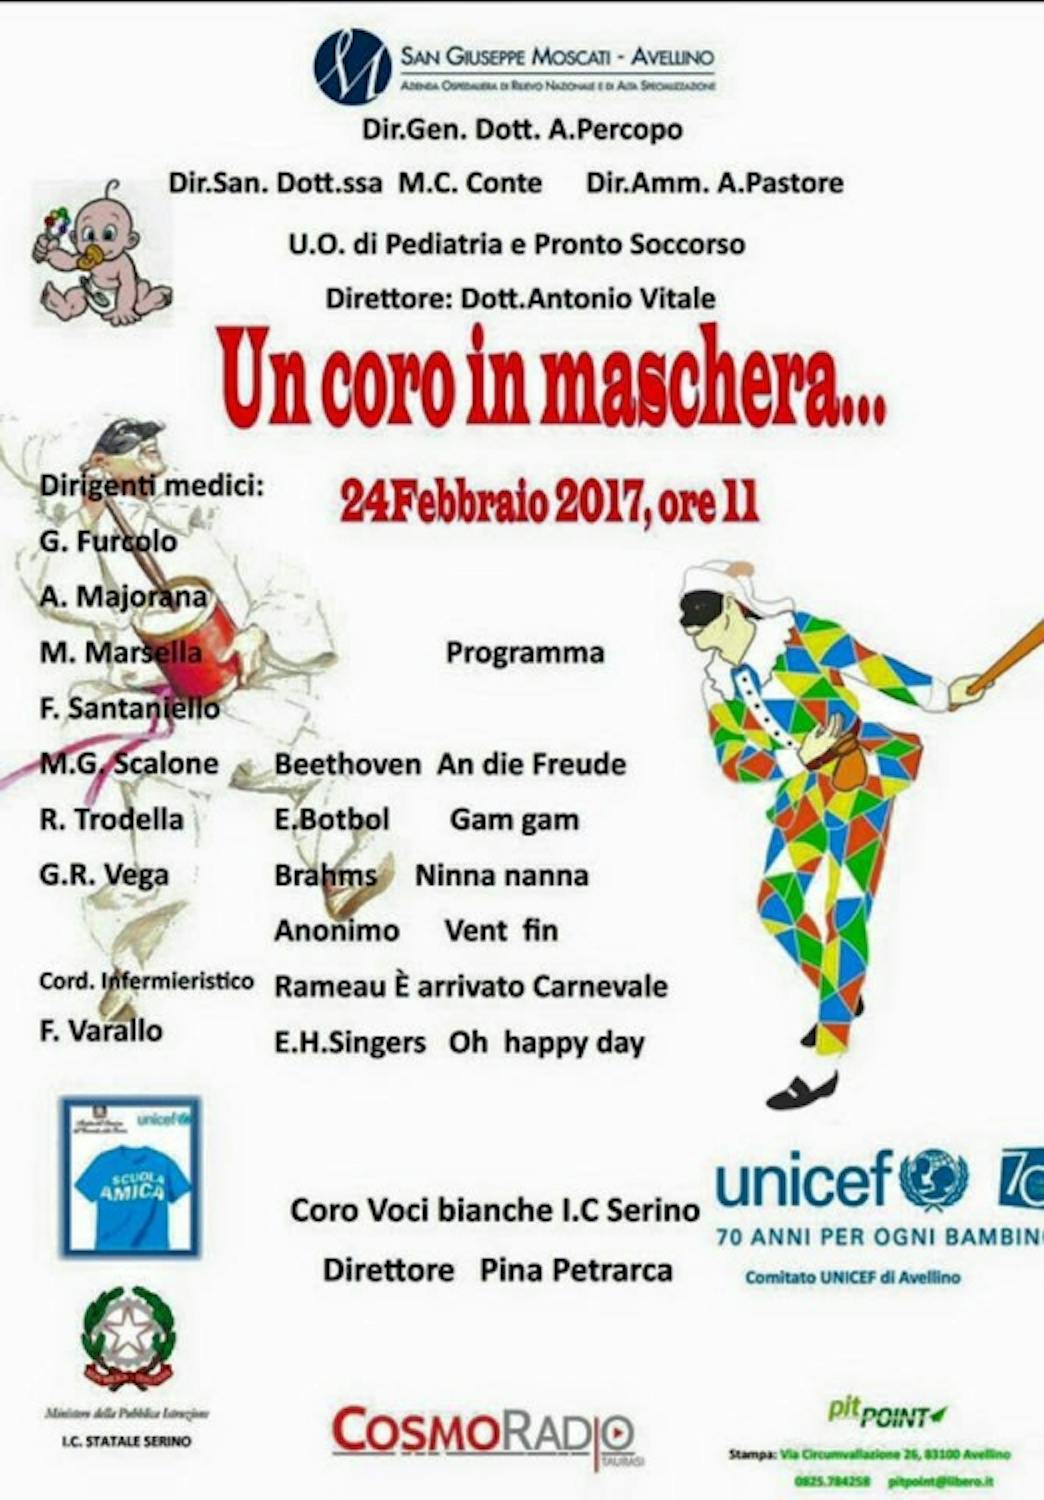 Un Coro in Maschera per i bambini del reparto pediatrico dell'Ospedale San Giuseppe Moscati di Avellino 